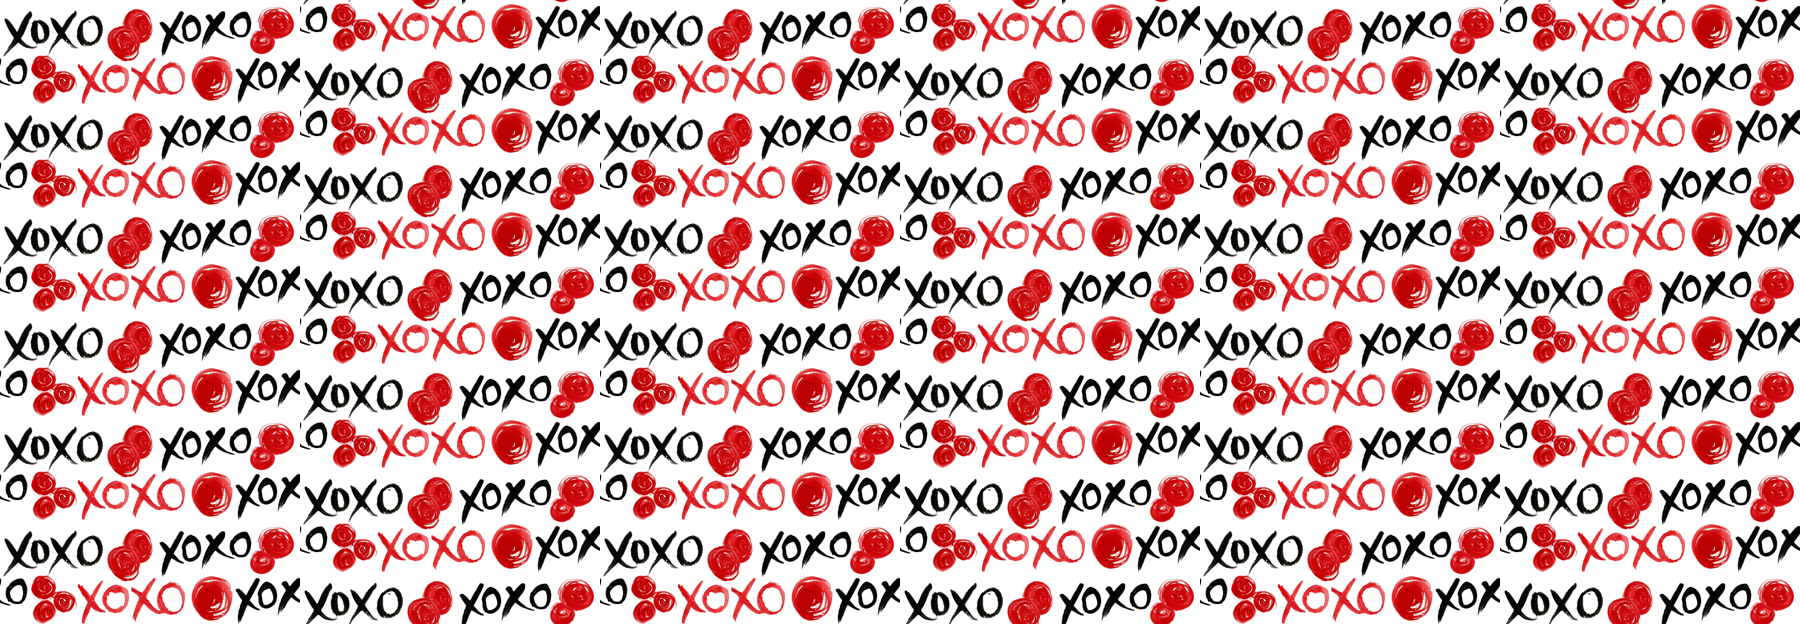 Xoxo Wallpaper